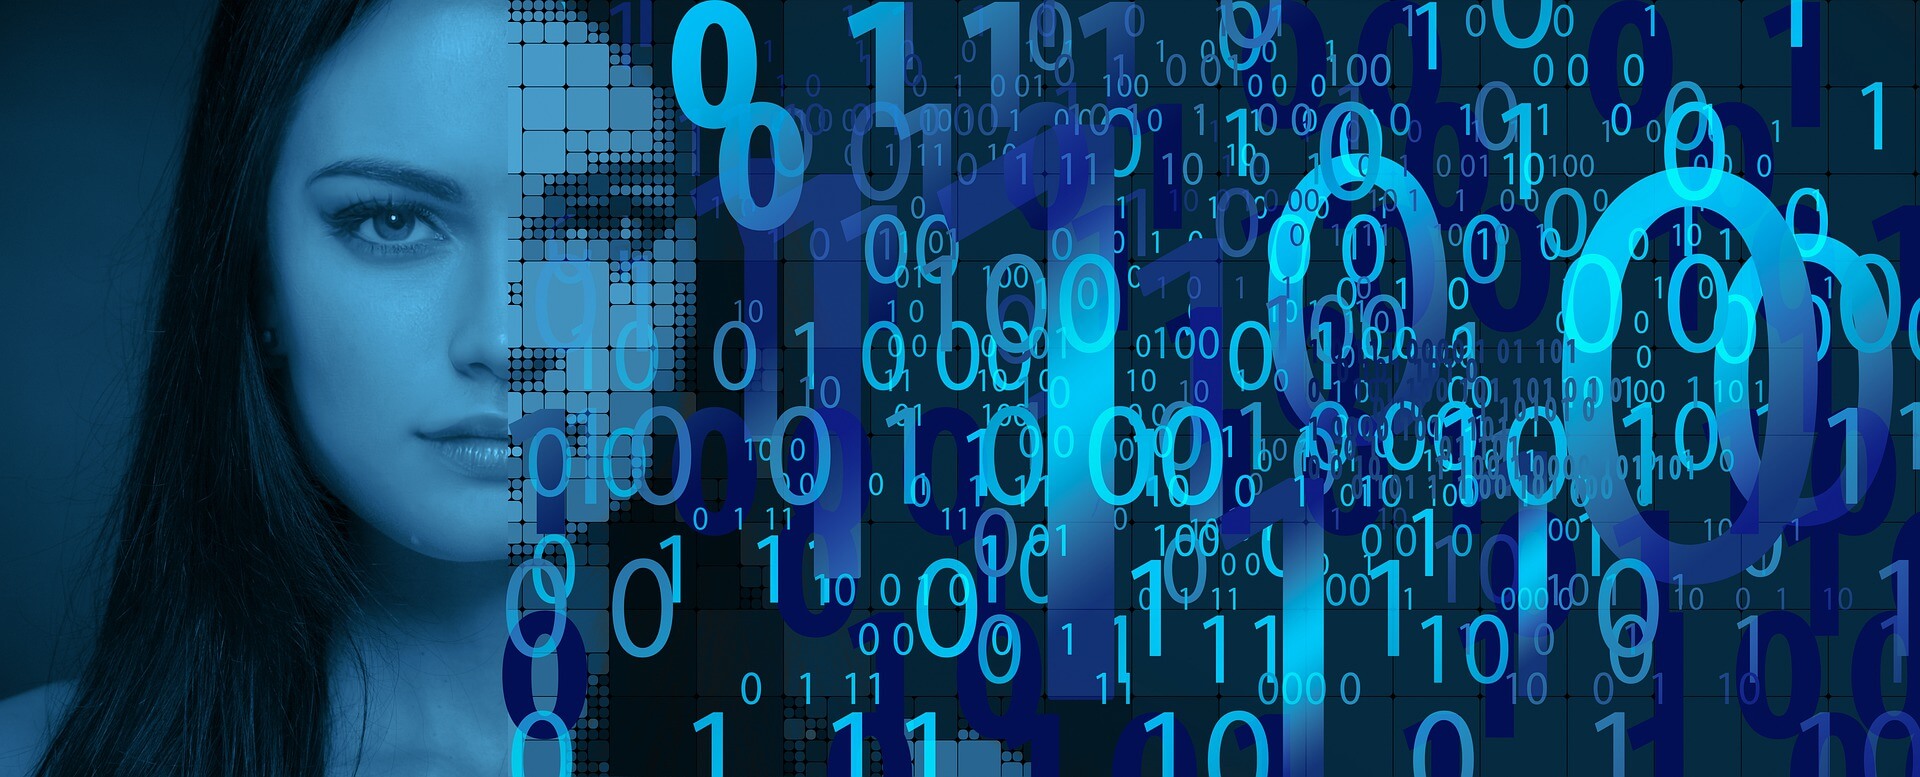 这是一张图像，展示了一位女性的侧脸，与数字和锁的符号融合，暗示着网络安全或数据保护的主题。